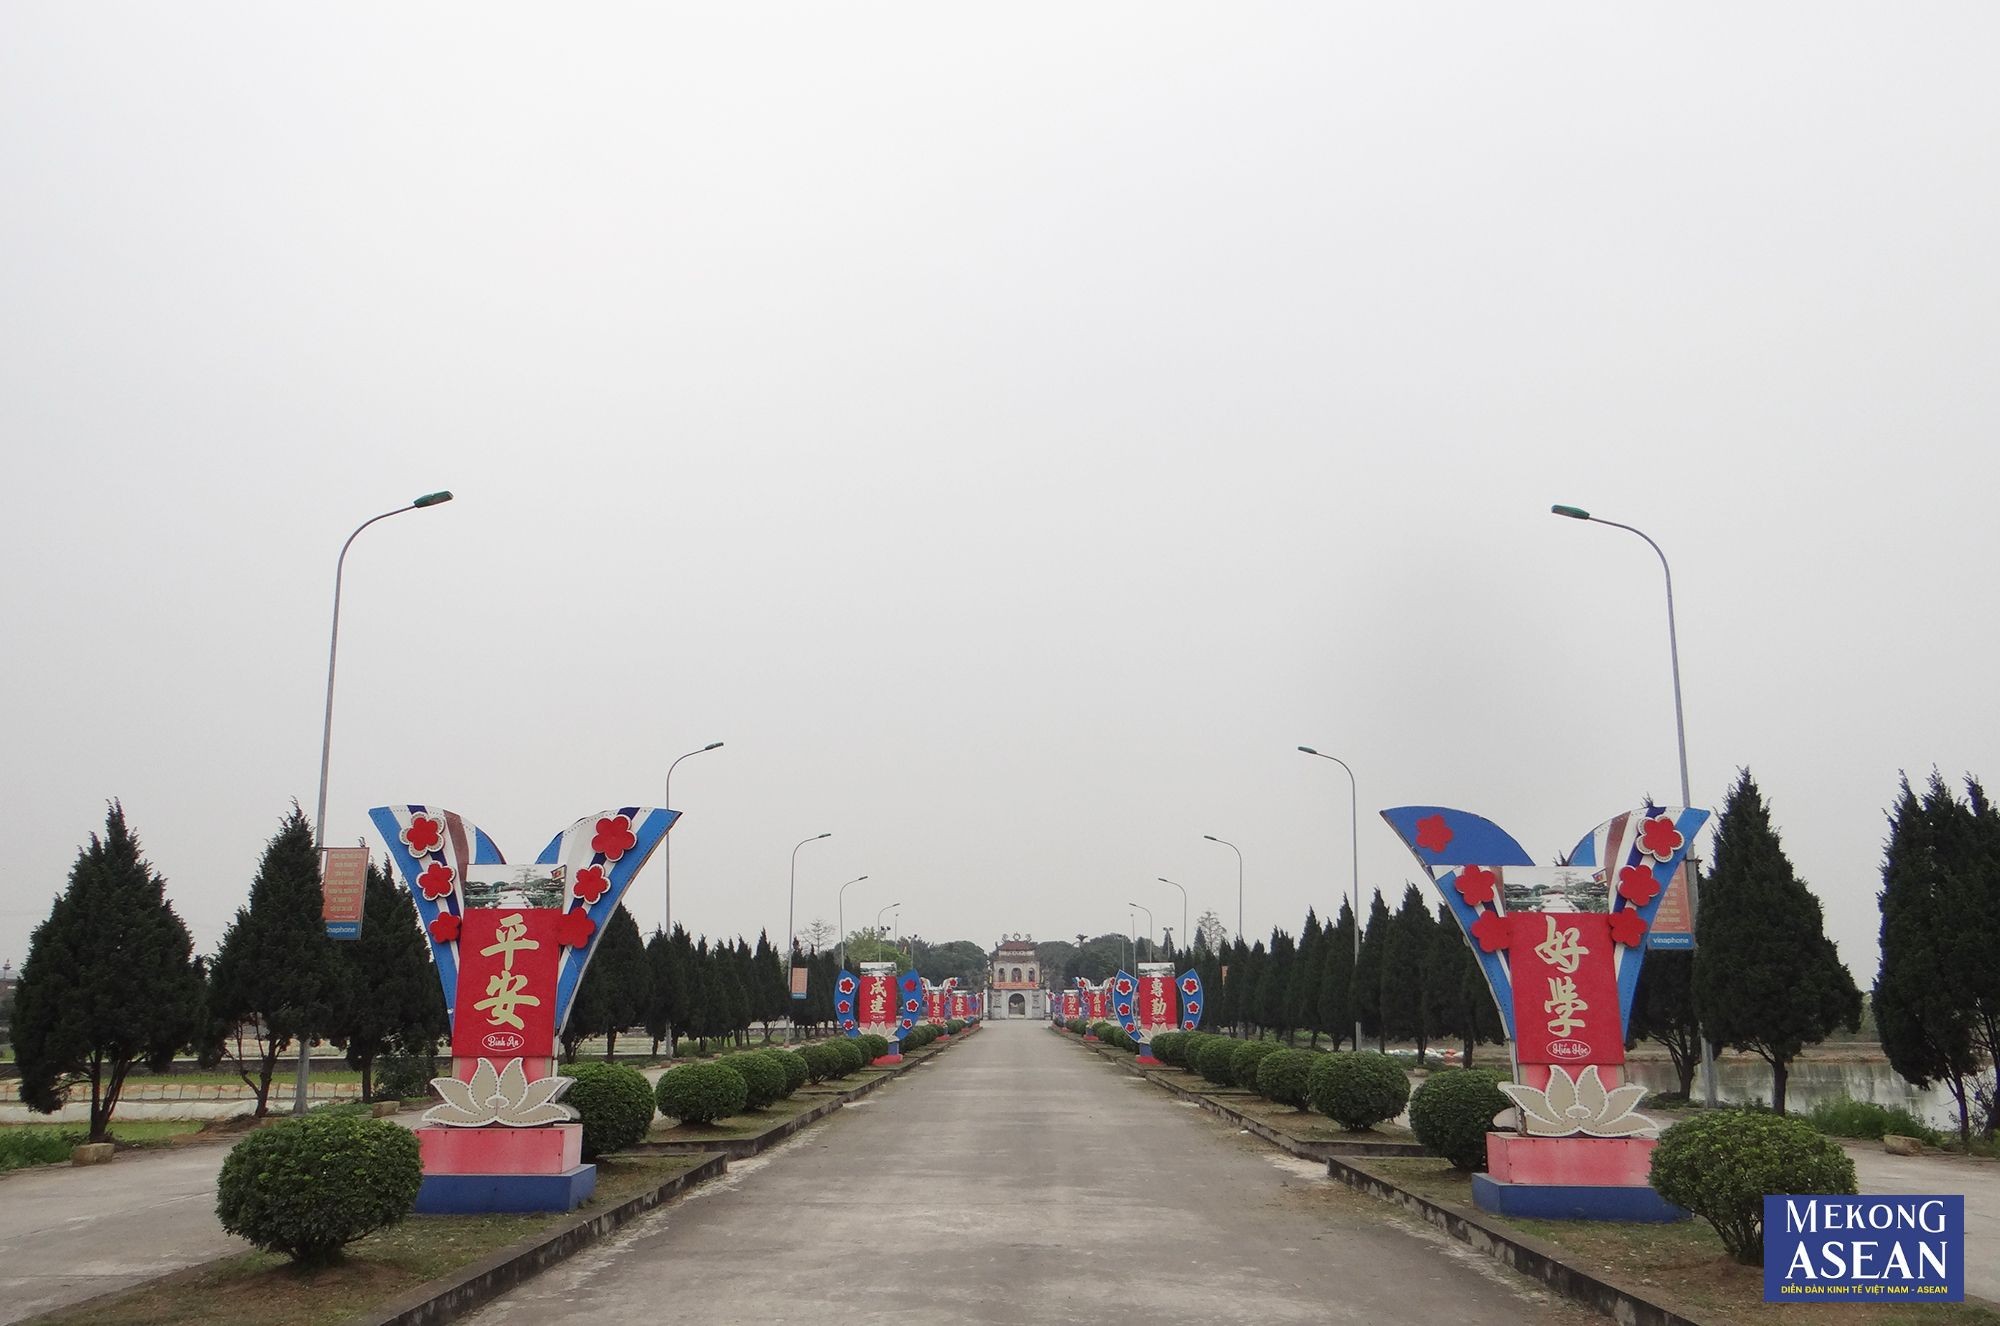 Văn miếu Mao Điền cách quốc lộ 5A chừng 200 mét, thuận lợi về giao thông và cách thủ đô Hà Nội 42 km về phía Đông, cách trung tâm thành phố Hải Dương 16km về phía Tây.